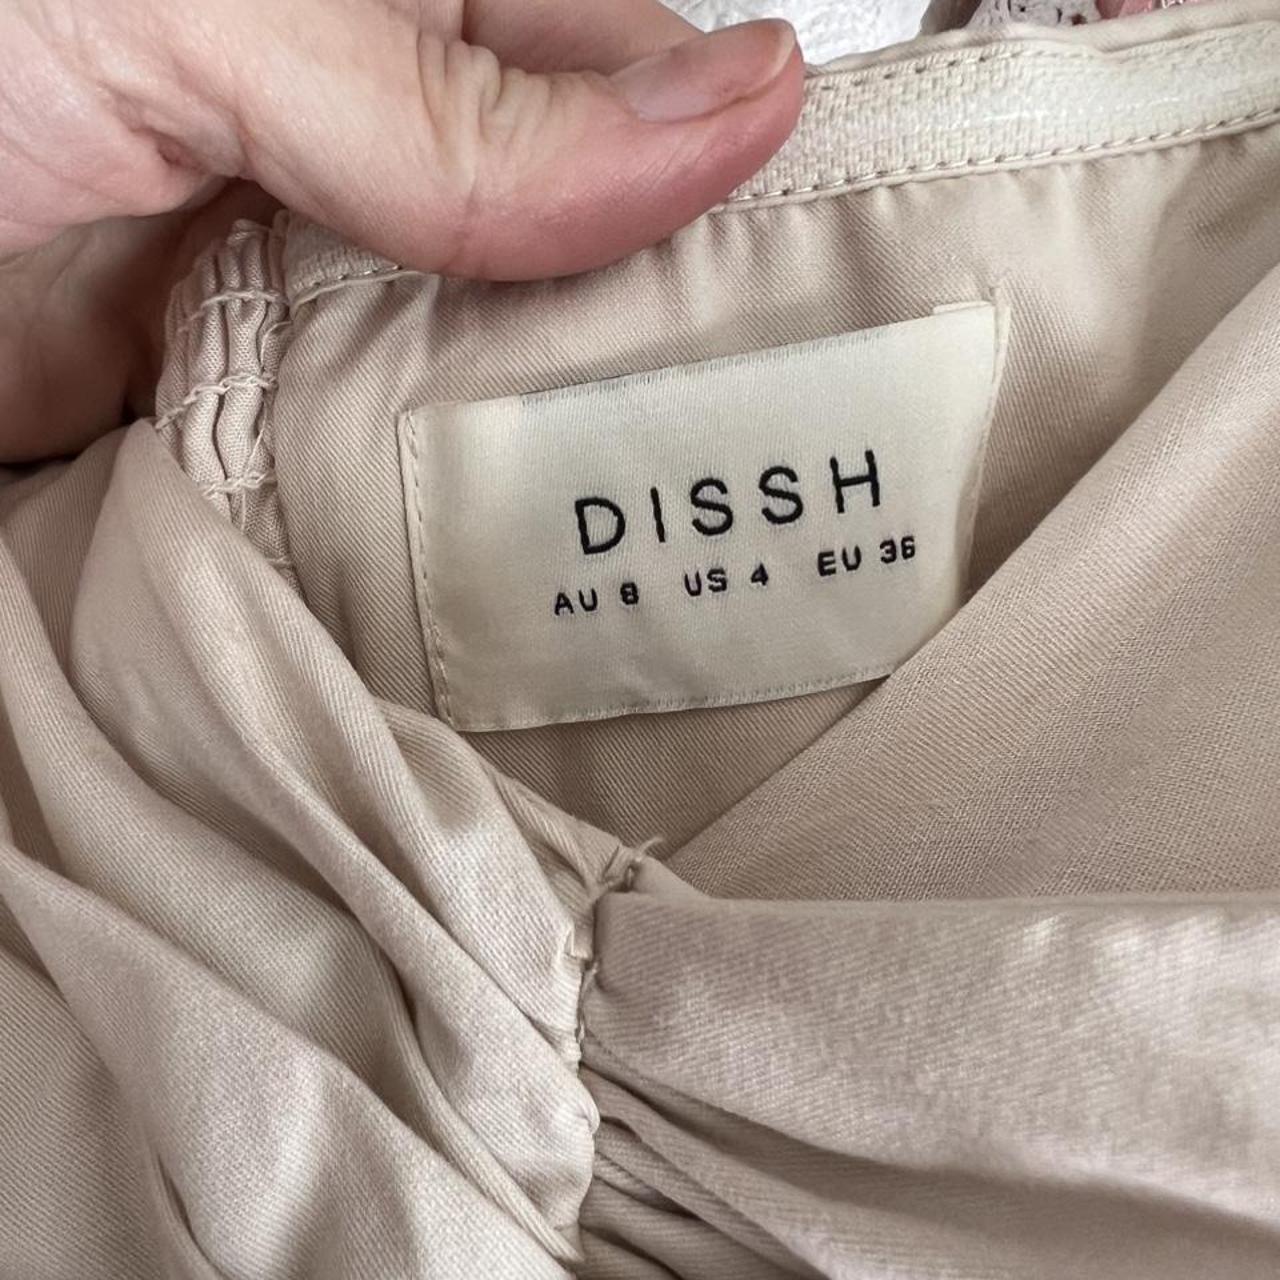 Dissh strapless dress- never worn - Depop